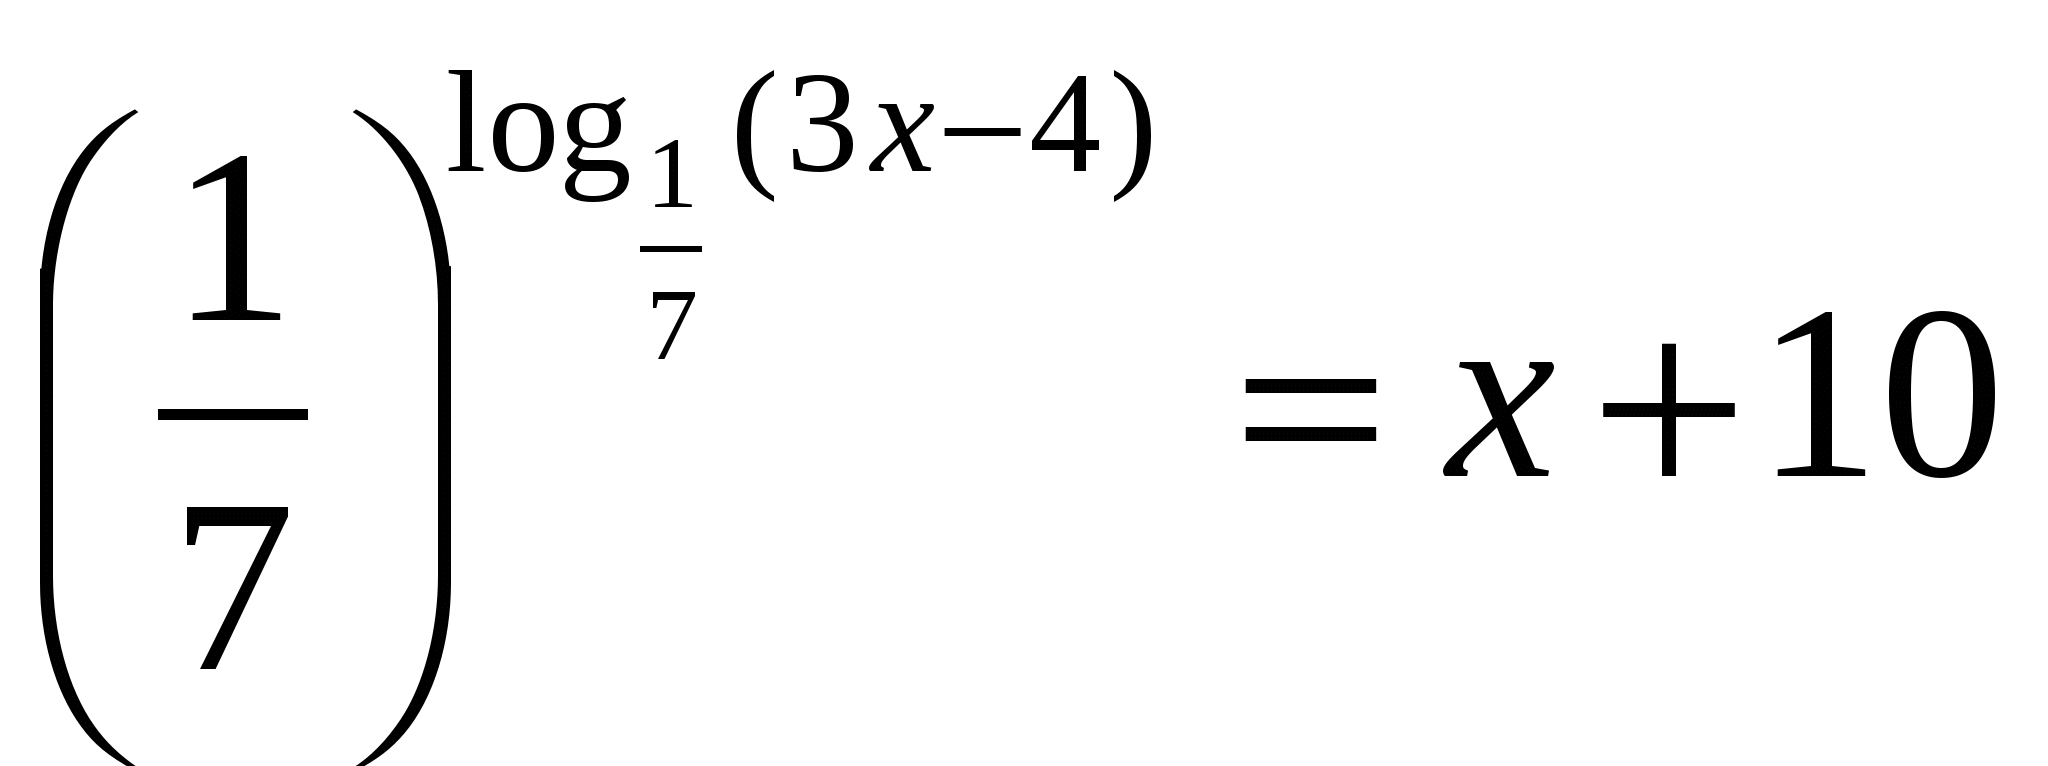 Конспект урока по алгебре Логарифмическая функция в уравнениях